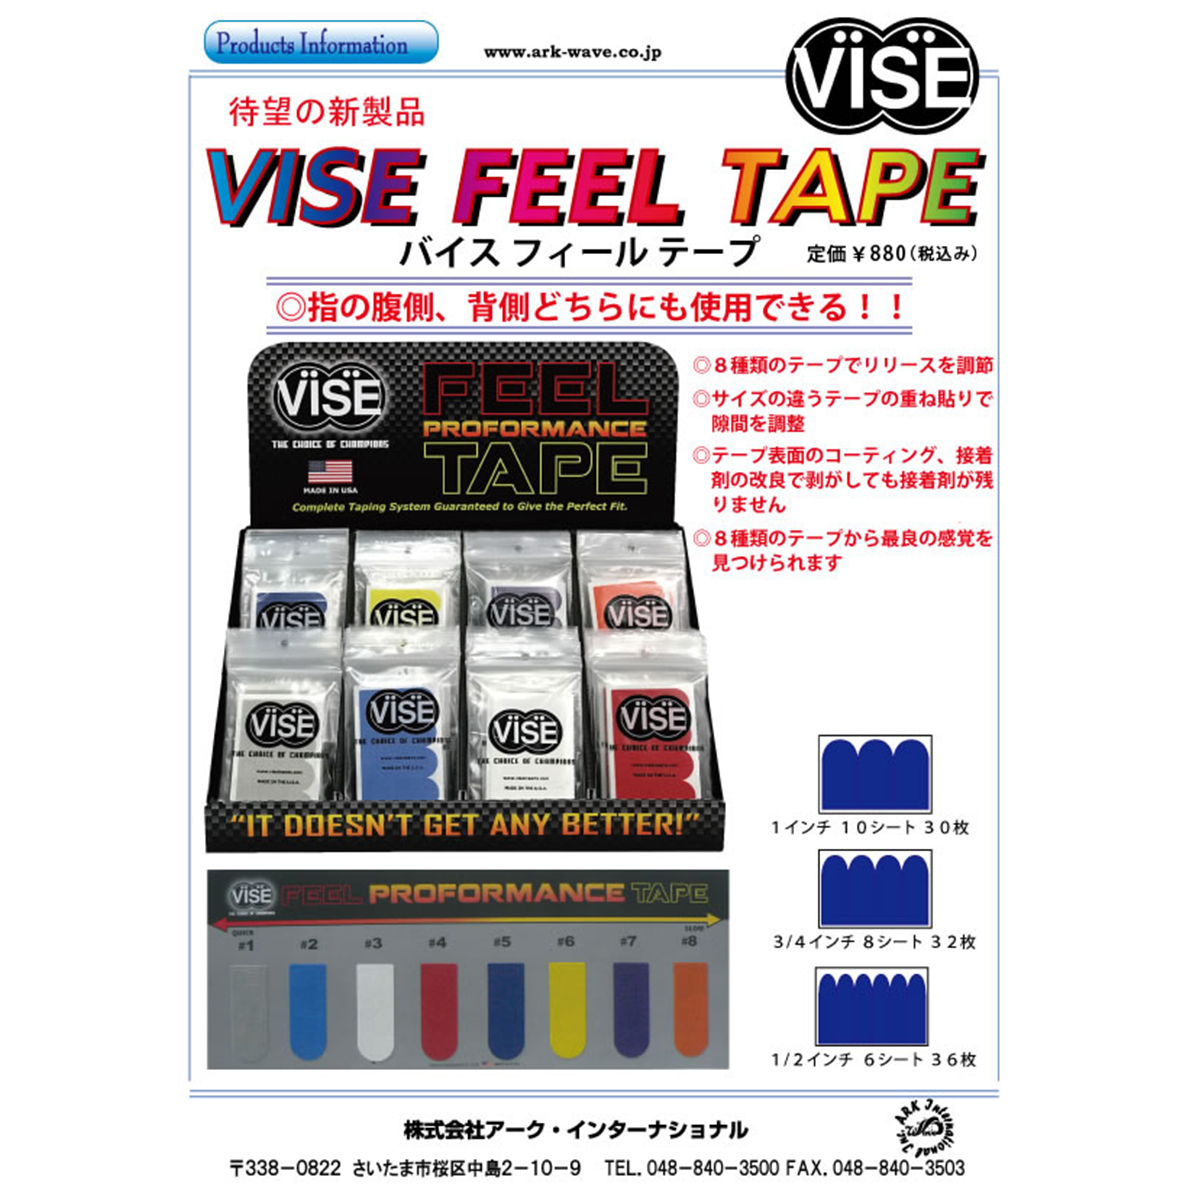 【12袋セット】VISE フィールテープ#4(赤色)